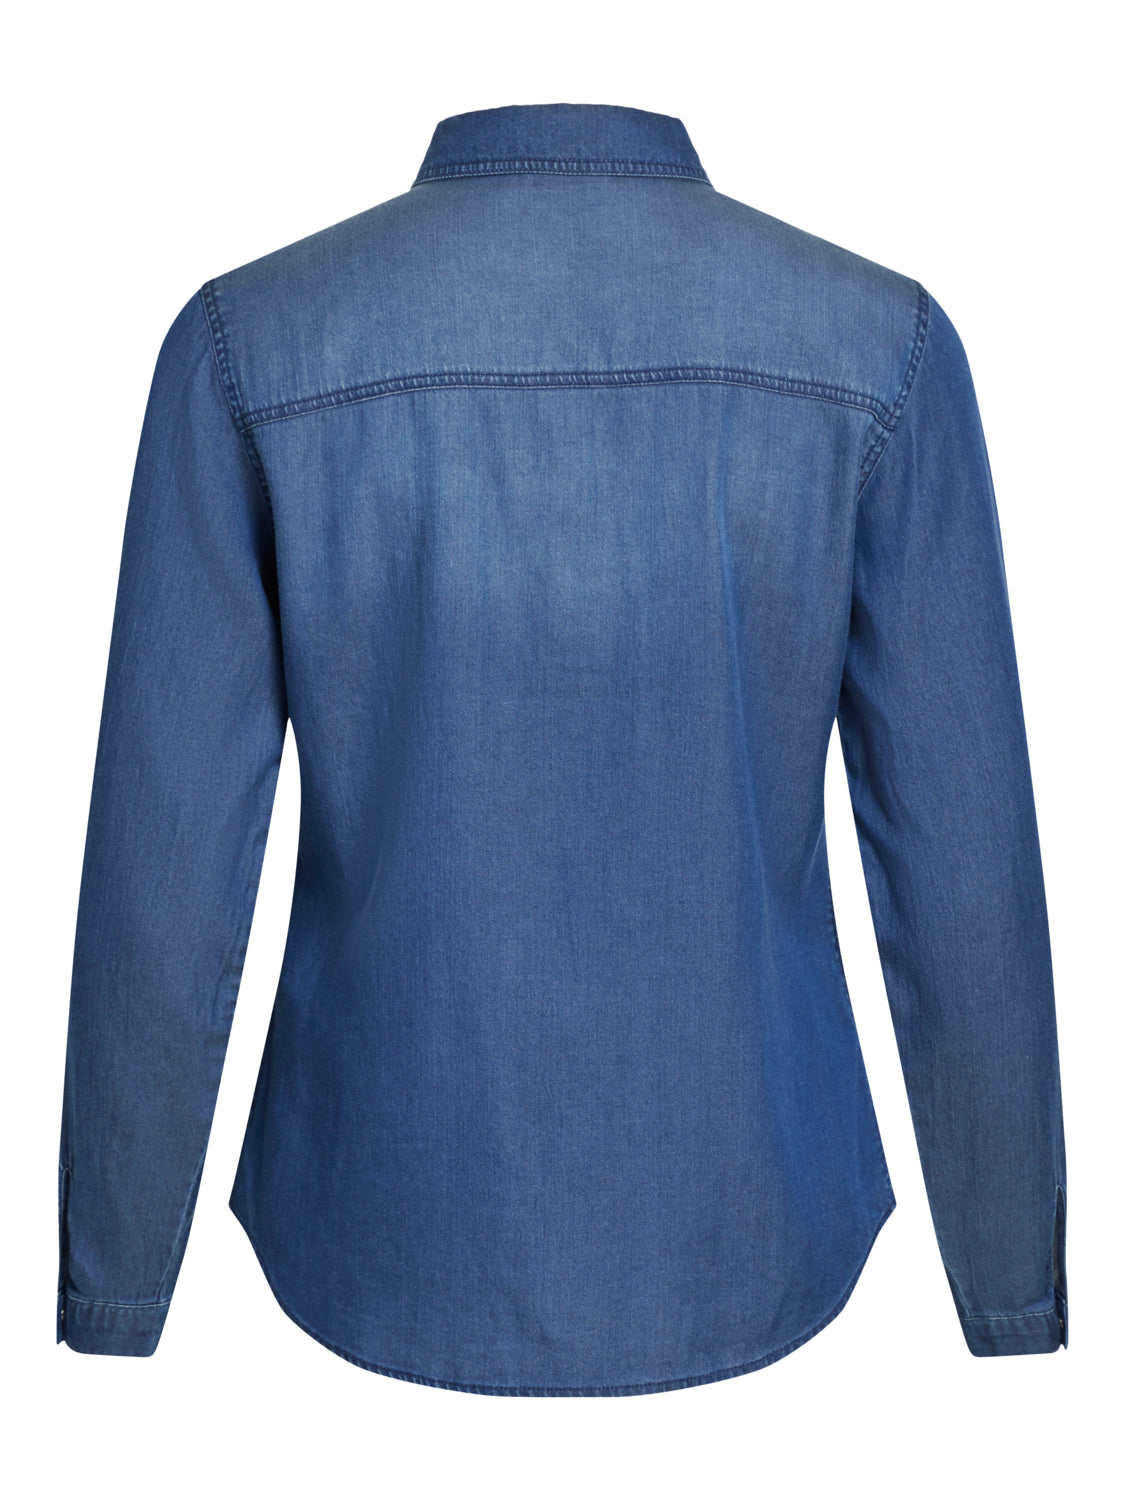 VIBISTA Shirts - dark blue denim